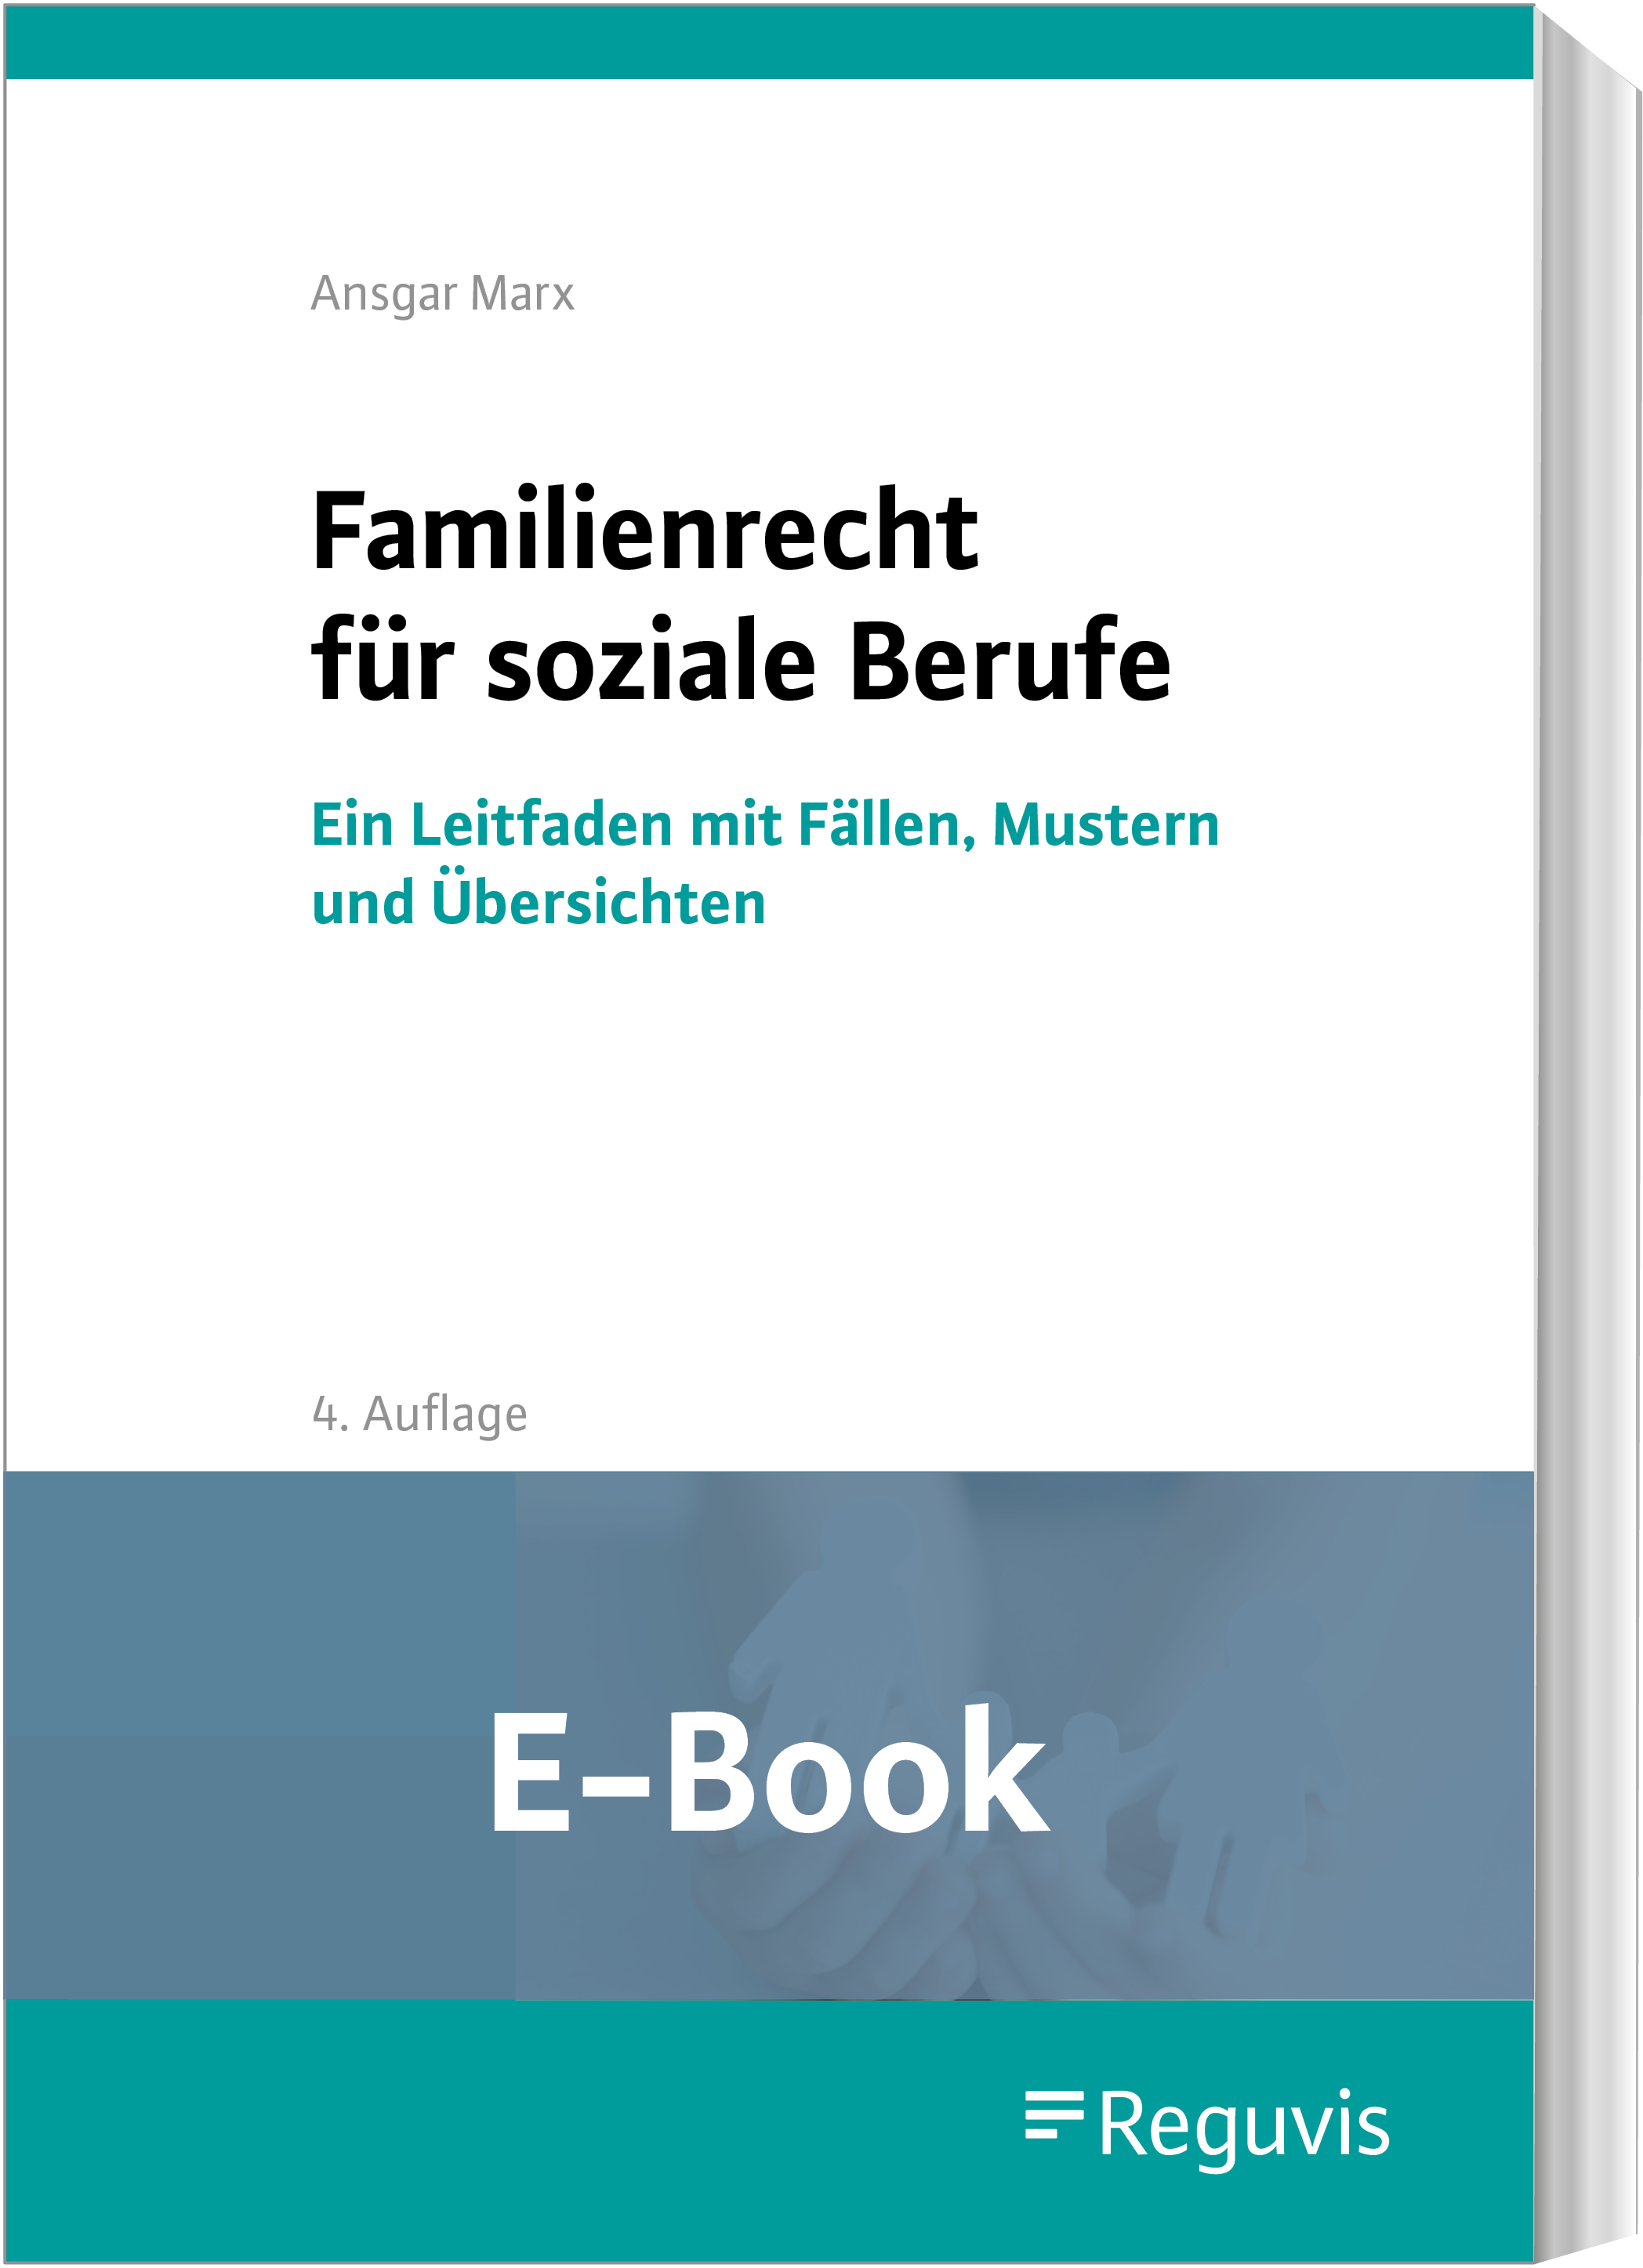 Marx; Familienrecht für soziale Berufe E-Book